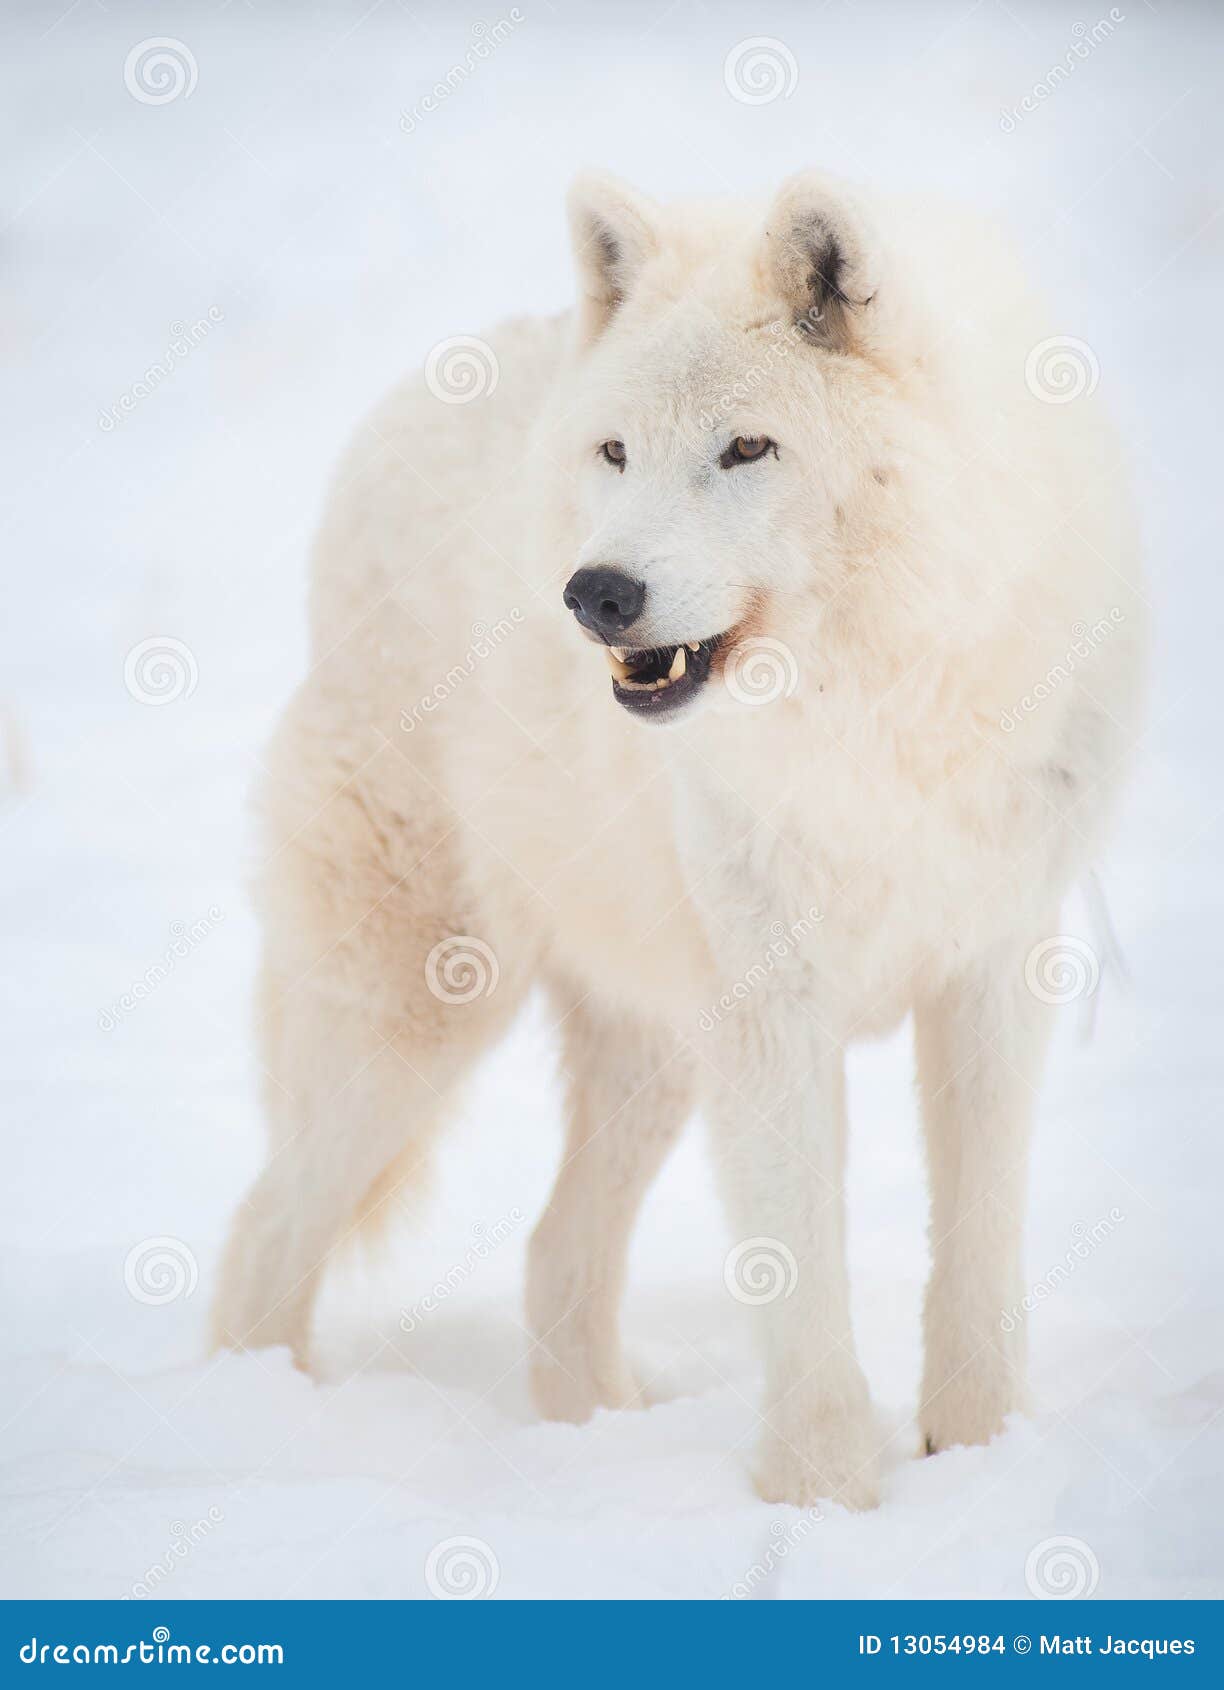 arctic-wolf-canis-lupus-arctos-snow-13054984.jpg